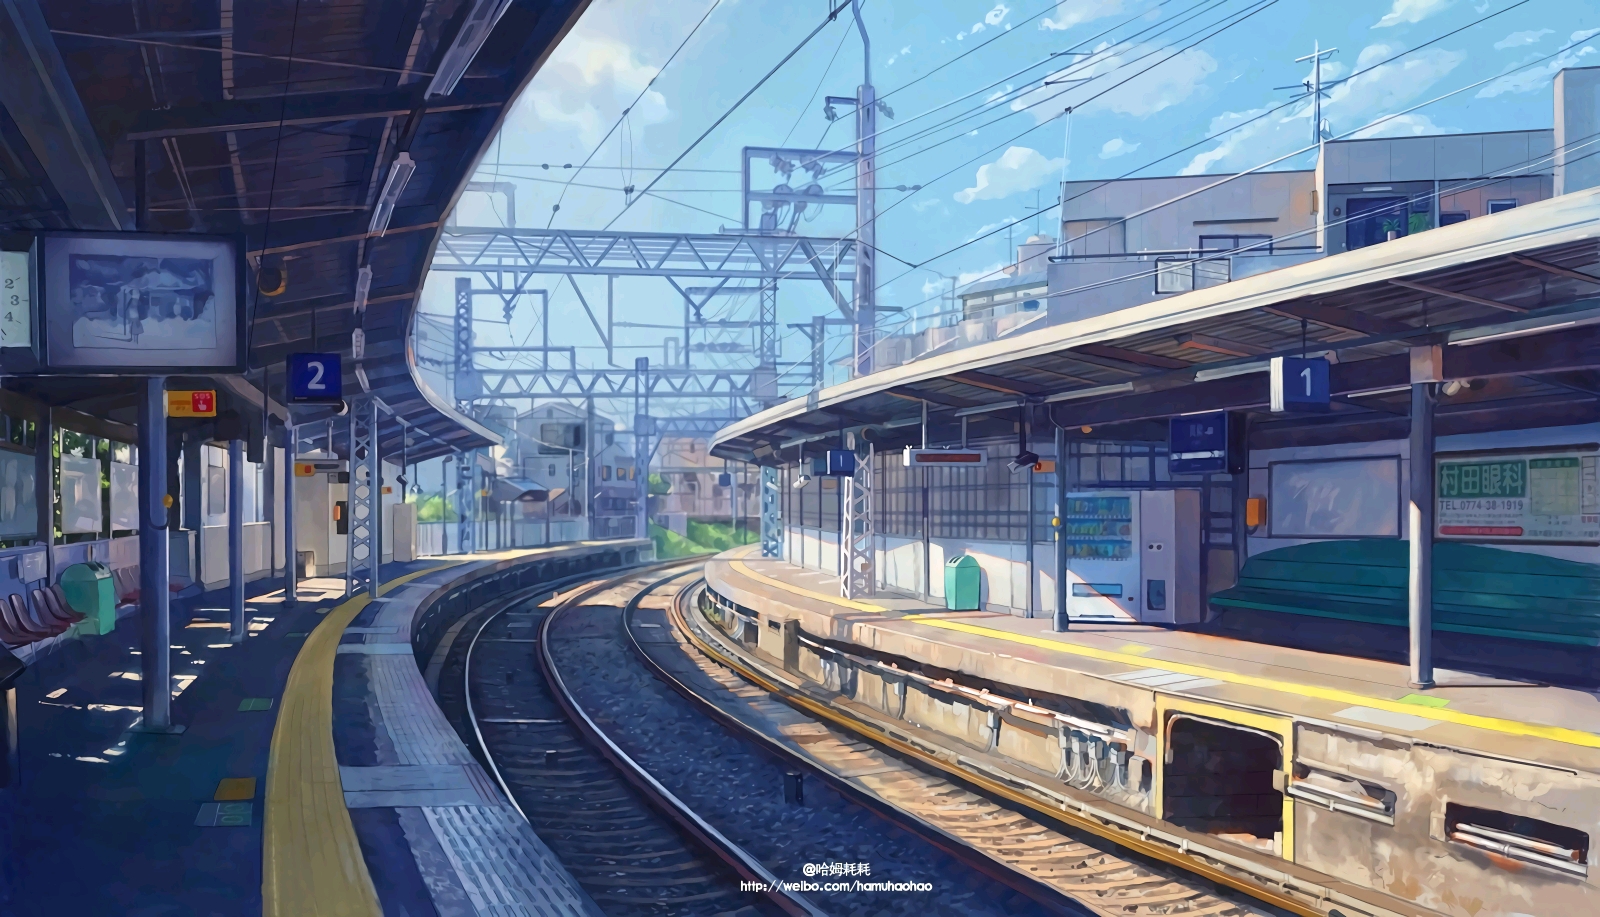 2K老火车车站站台场景舞台背景,其它舞台背景下载,高清2560X1440视频素材下载,凌点视频素材网,编号:282108